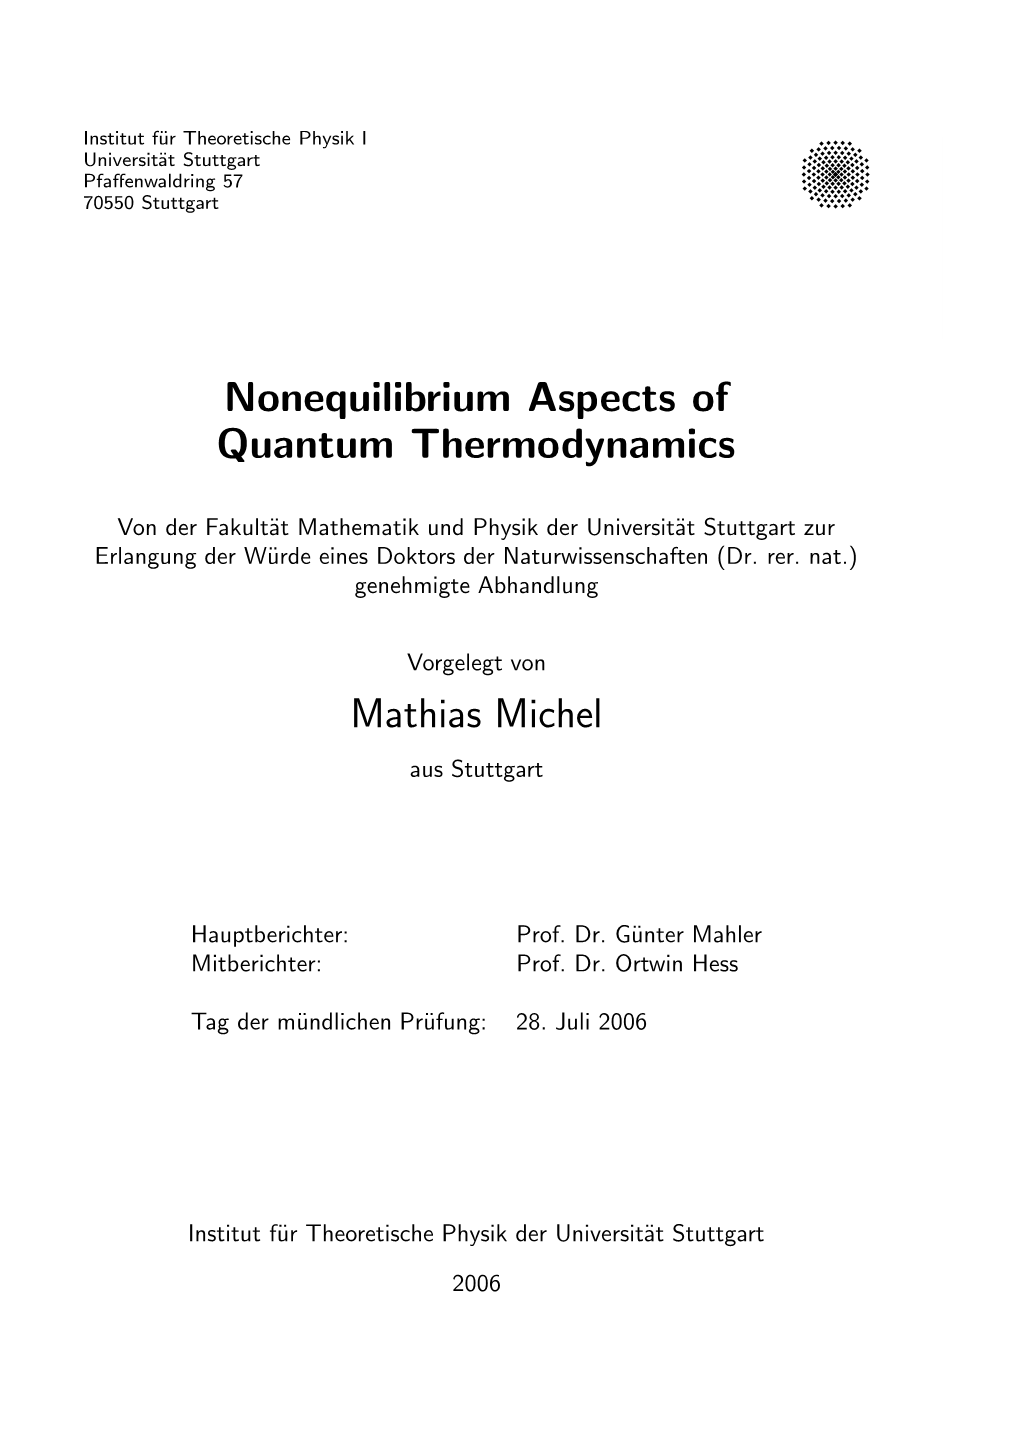 Nonequilibrium Aspects of Quantum Thermodynamics Mathias Michel